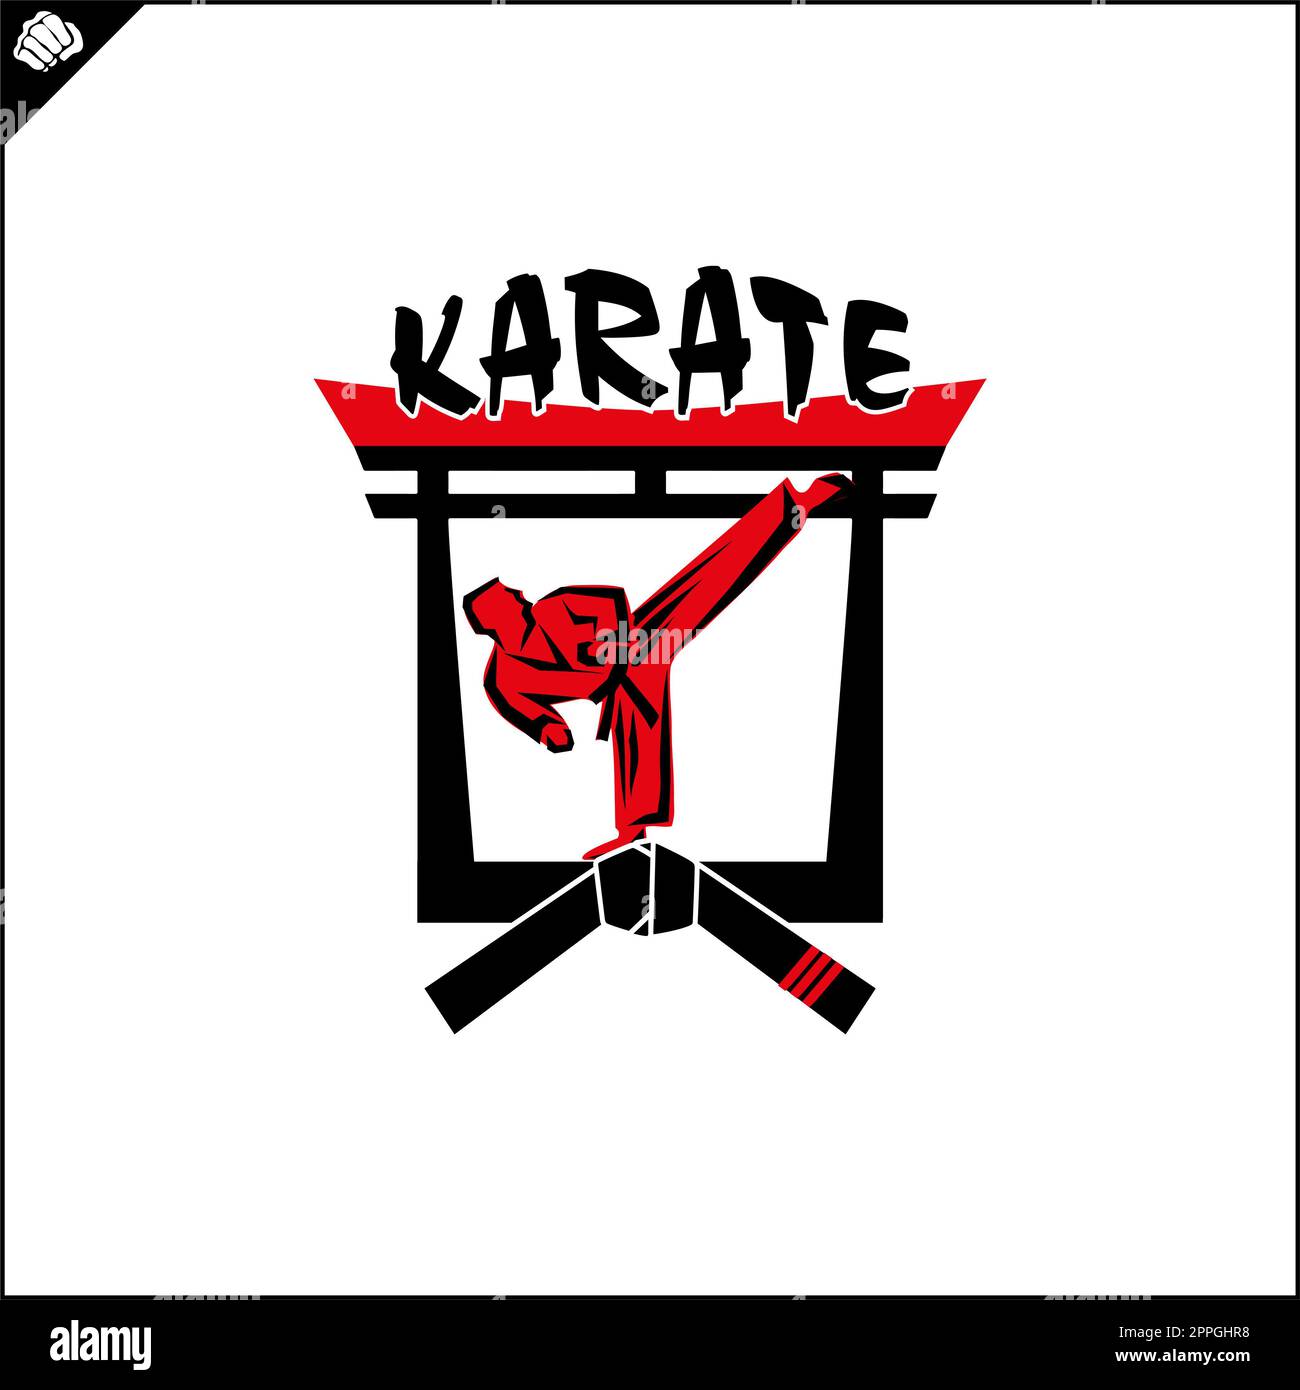 Karate high kick emblem martial art symbol design Stock Photo - Alamy